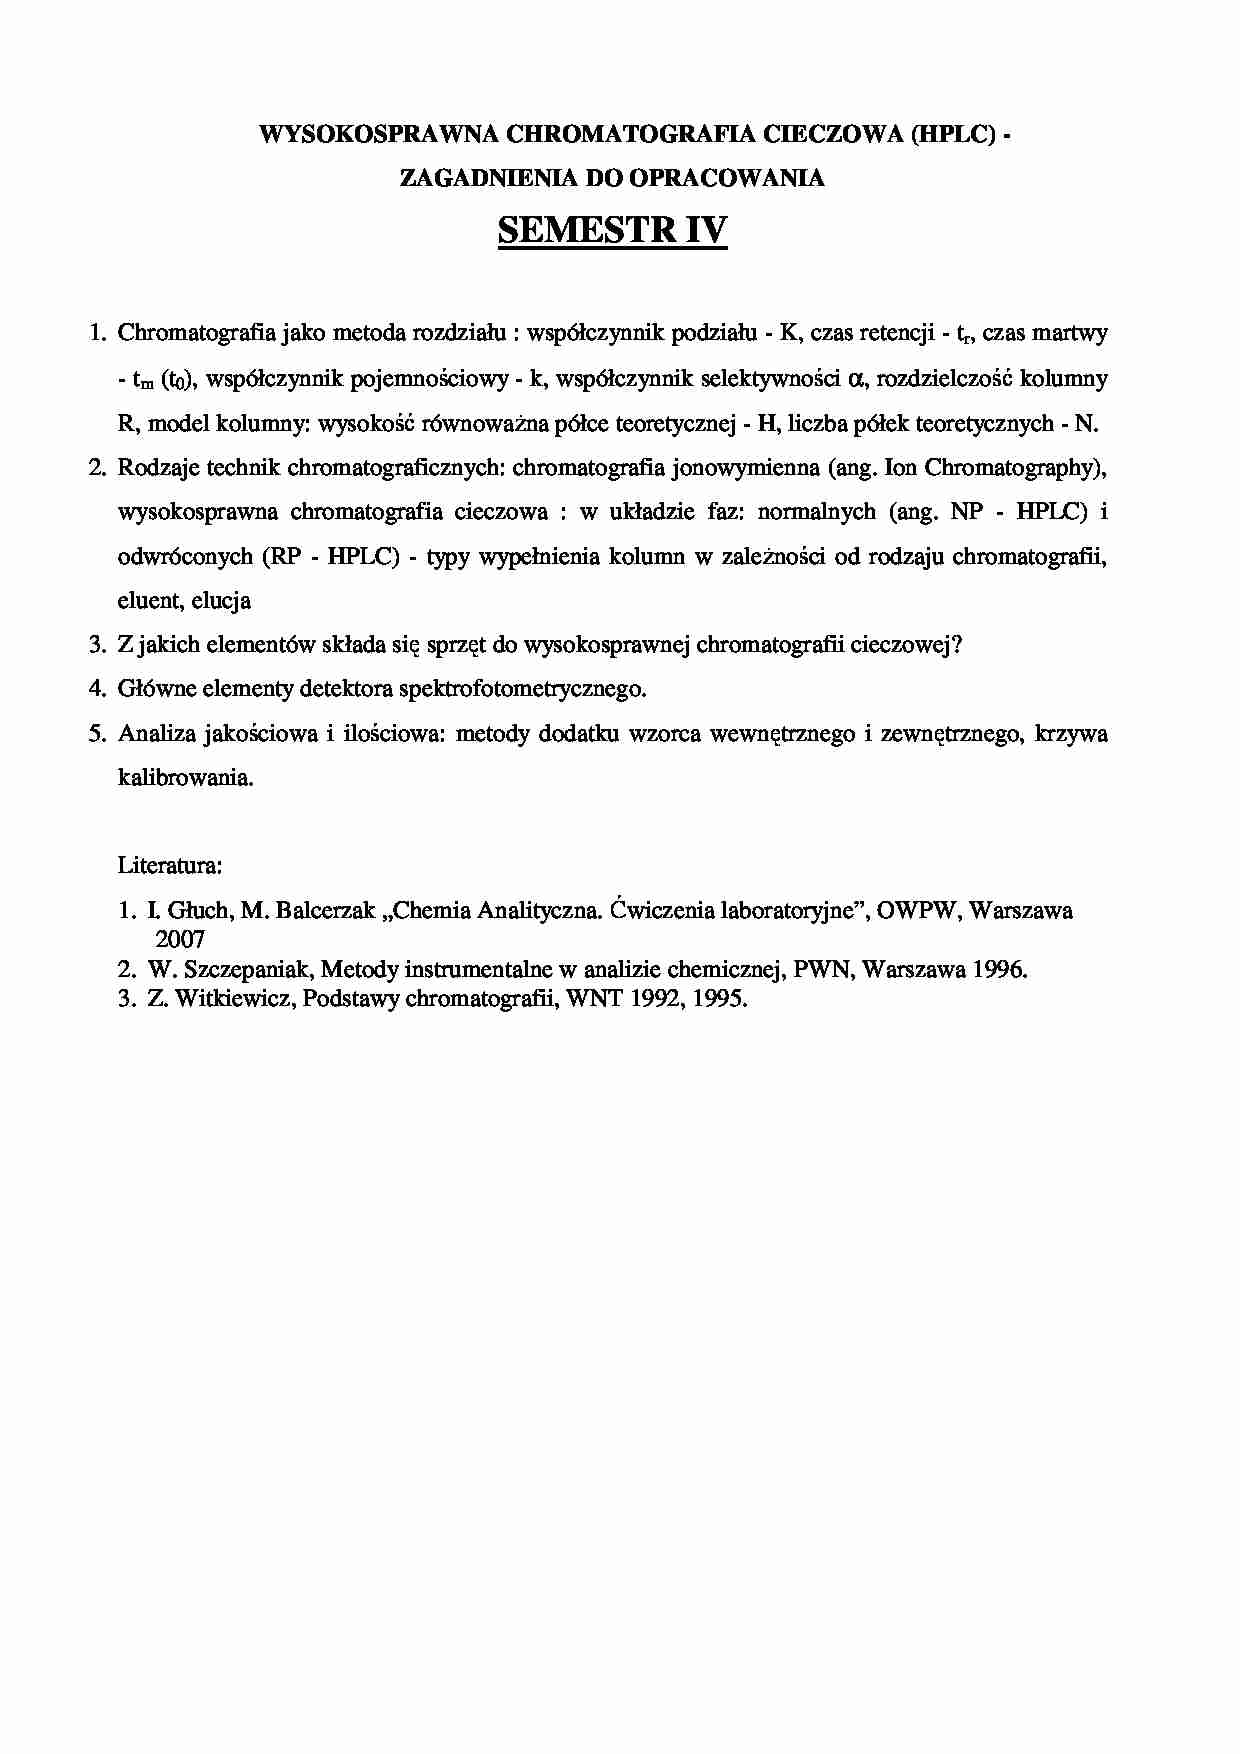 Chromatografia cieczowa - zagadnienia egzaminacyjne - strona 1